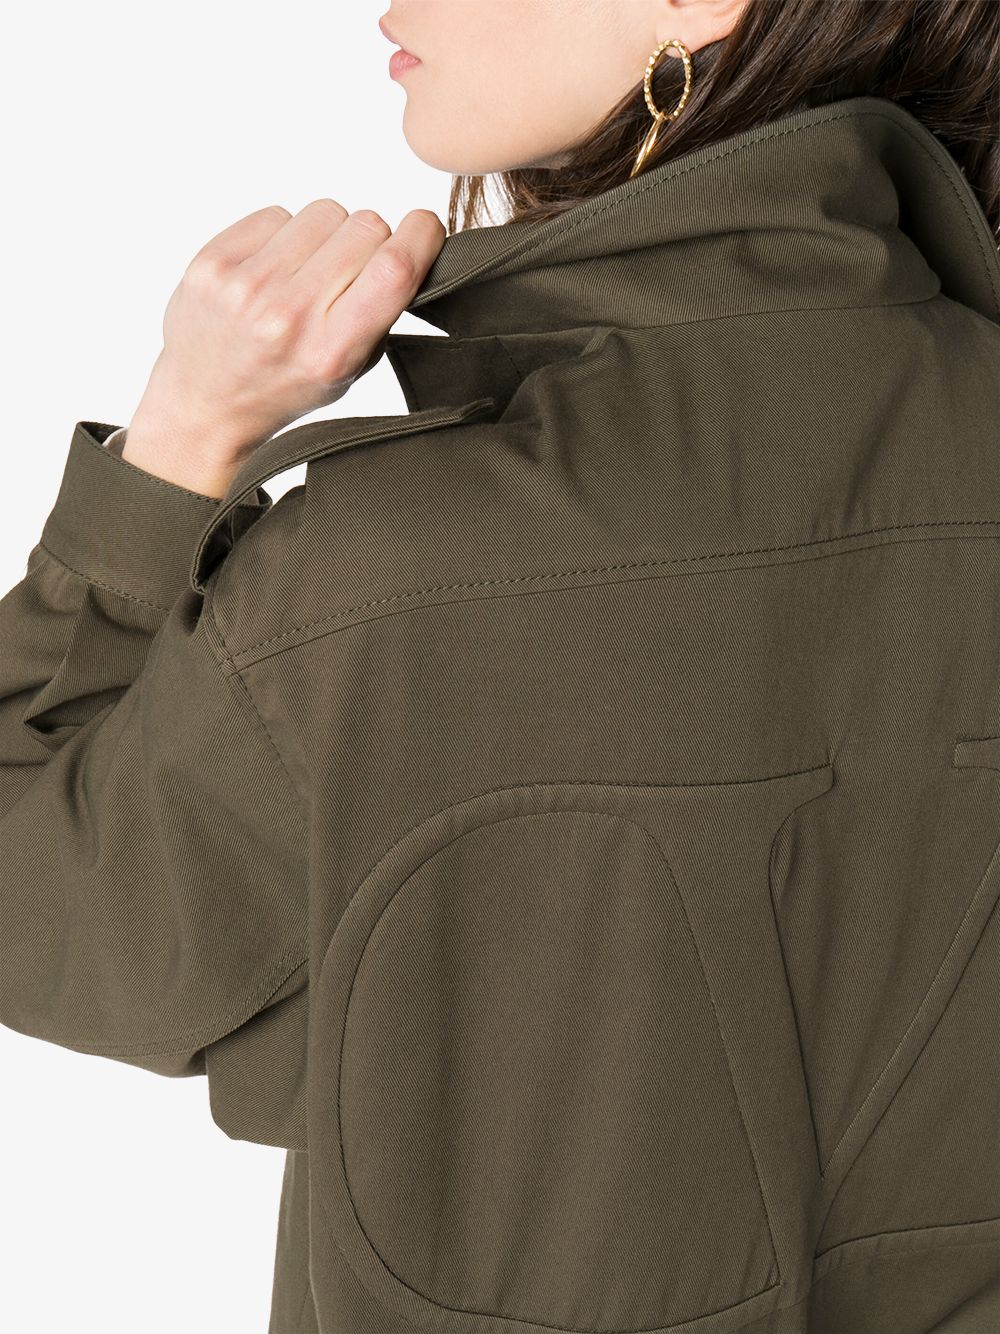 Легкая куртка в армейском стиле — решение на прохладное лето и раннюю осень (фото 1)